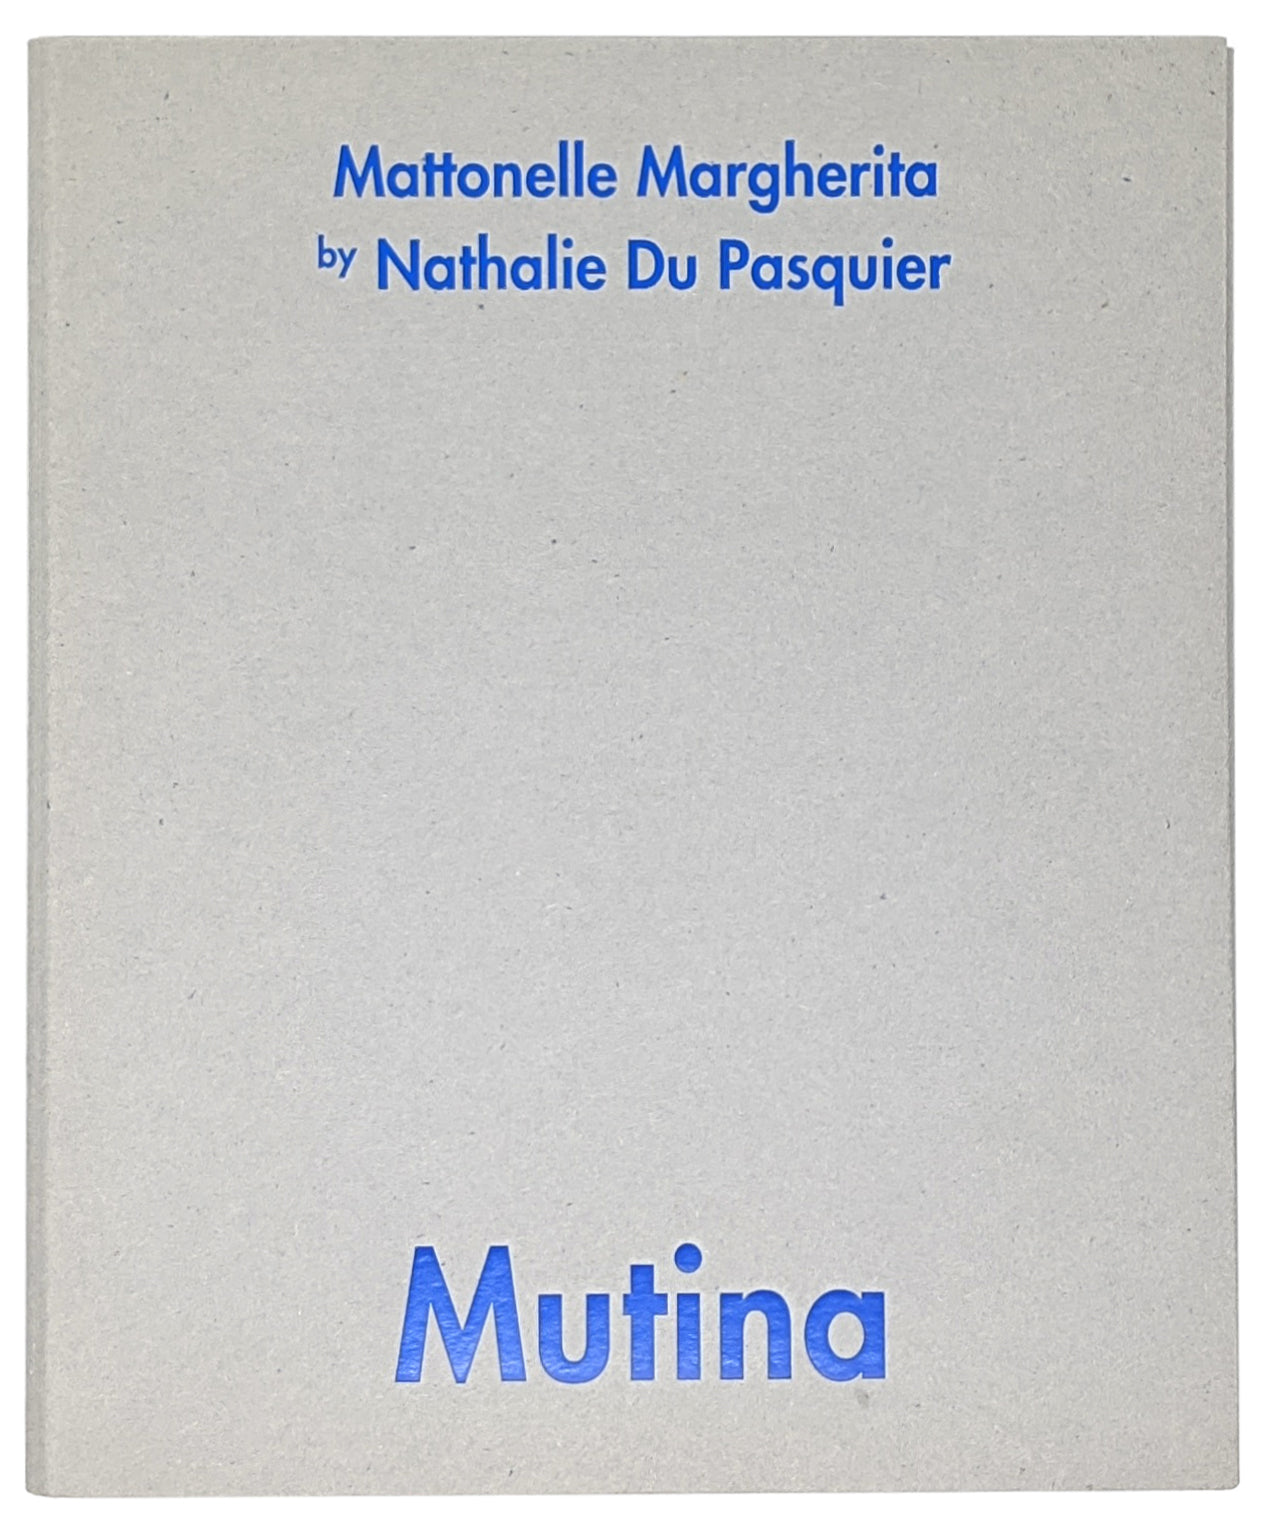 Nathalie Du Pasquier x Mutina - Mattonelle Margherita, 2020